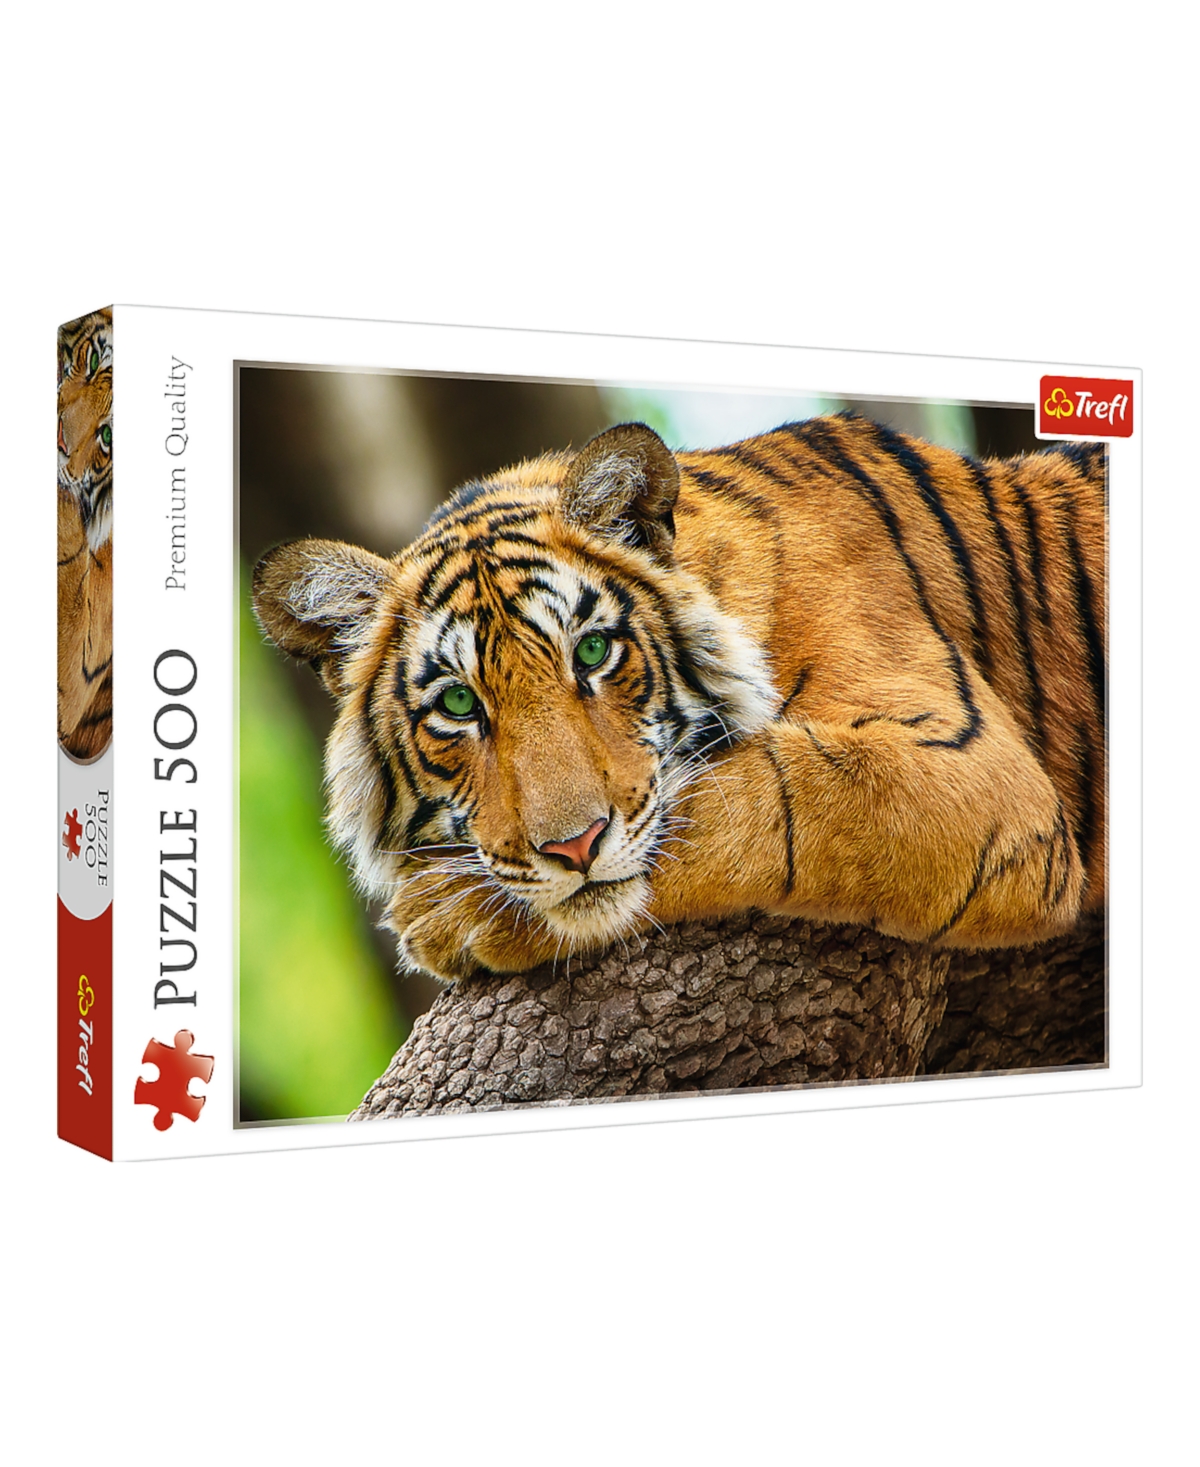 Trefl Red 500 Piece Puzzle- Tiger Portrait In Multi